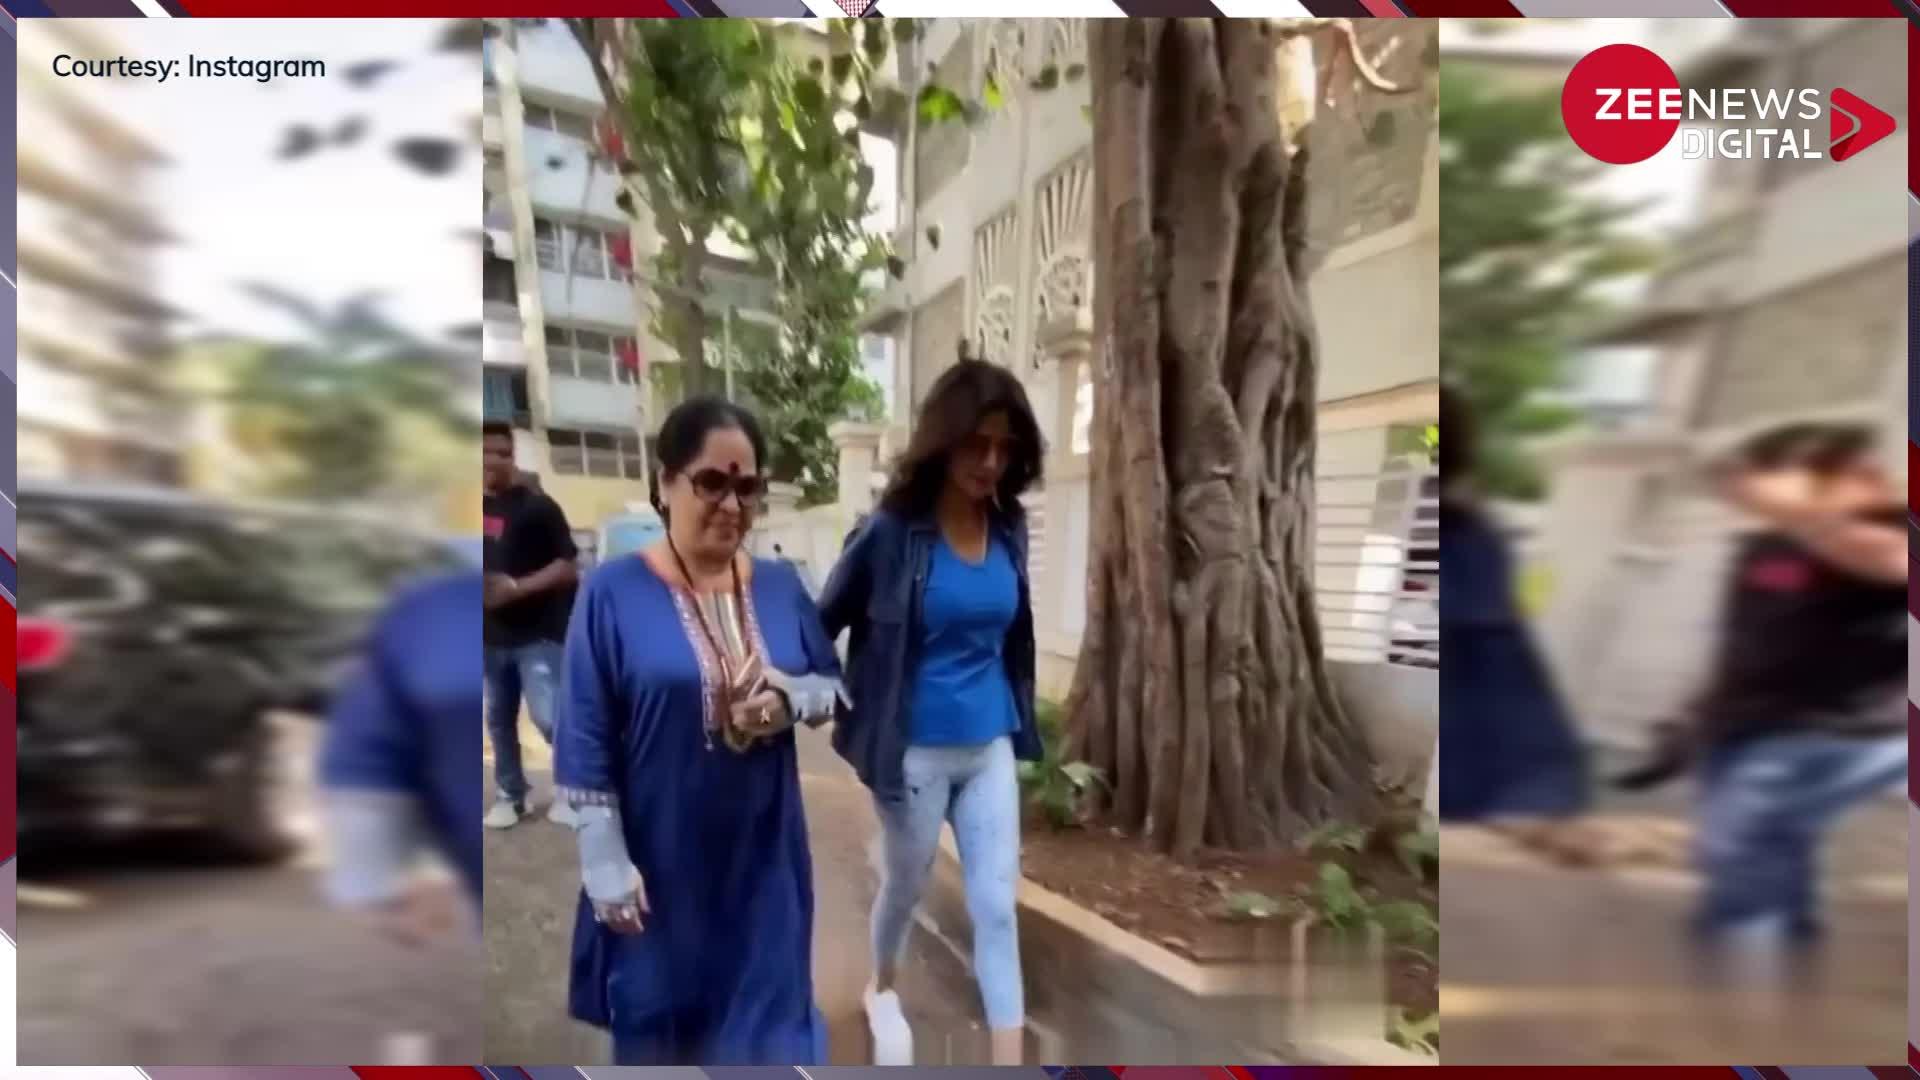 मां के साथ बाहर निकलीं Shilpa Shetty का पैपराजी कर रहे थे पीछा, एक्ट्रेस ने सुनाते हुए कहा- 'पता कैसे चलता है'